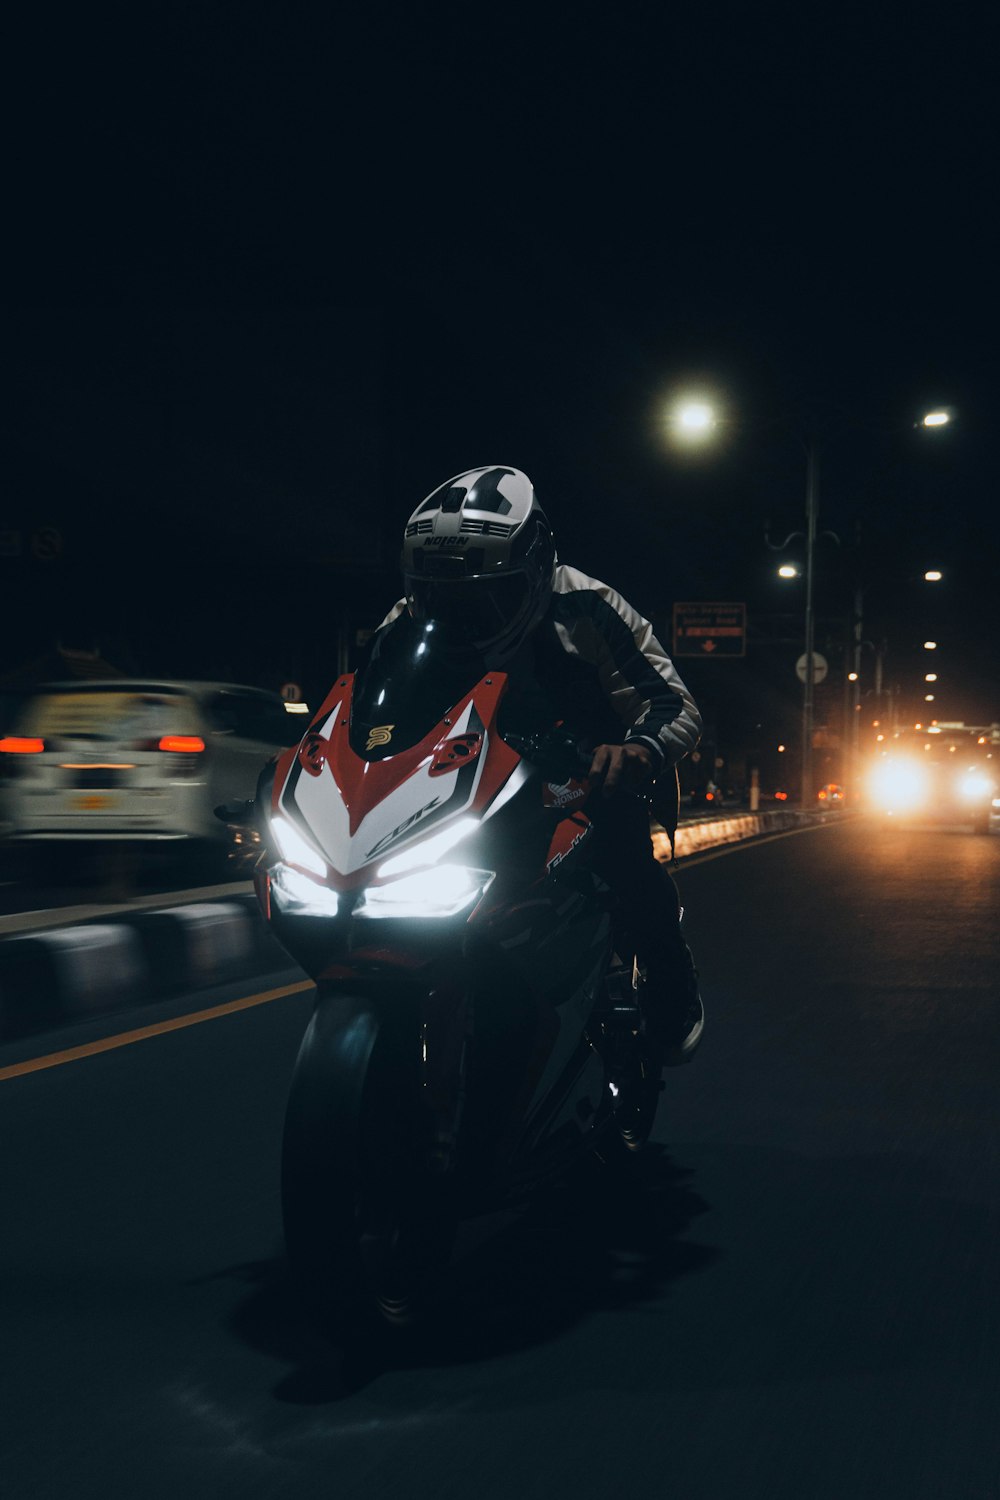 homme en veste noire conduisant une moto pendant la nuit